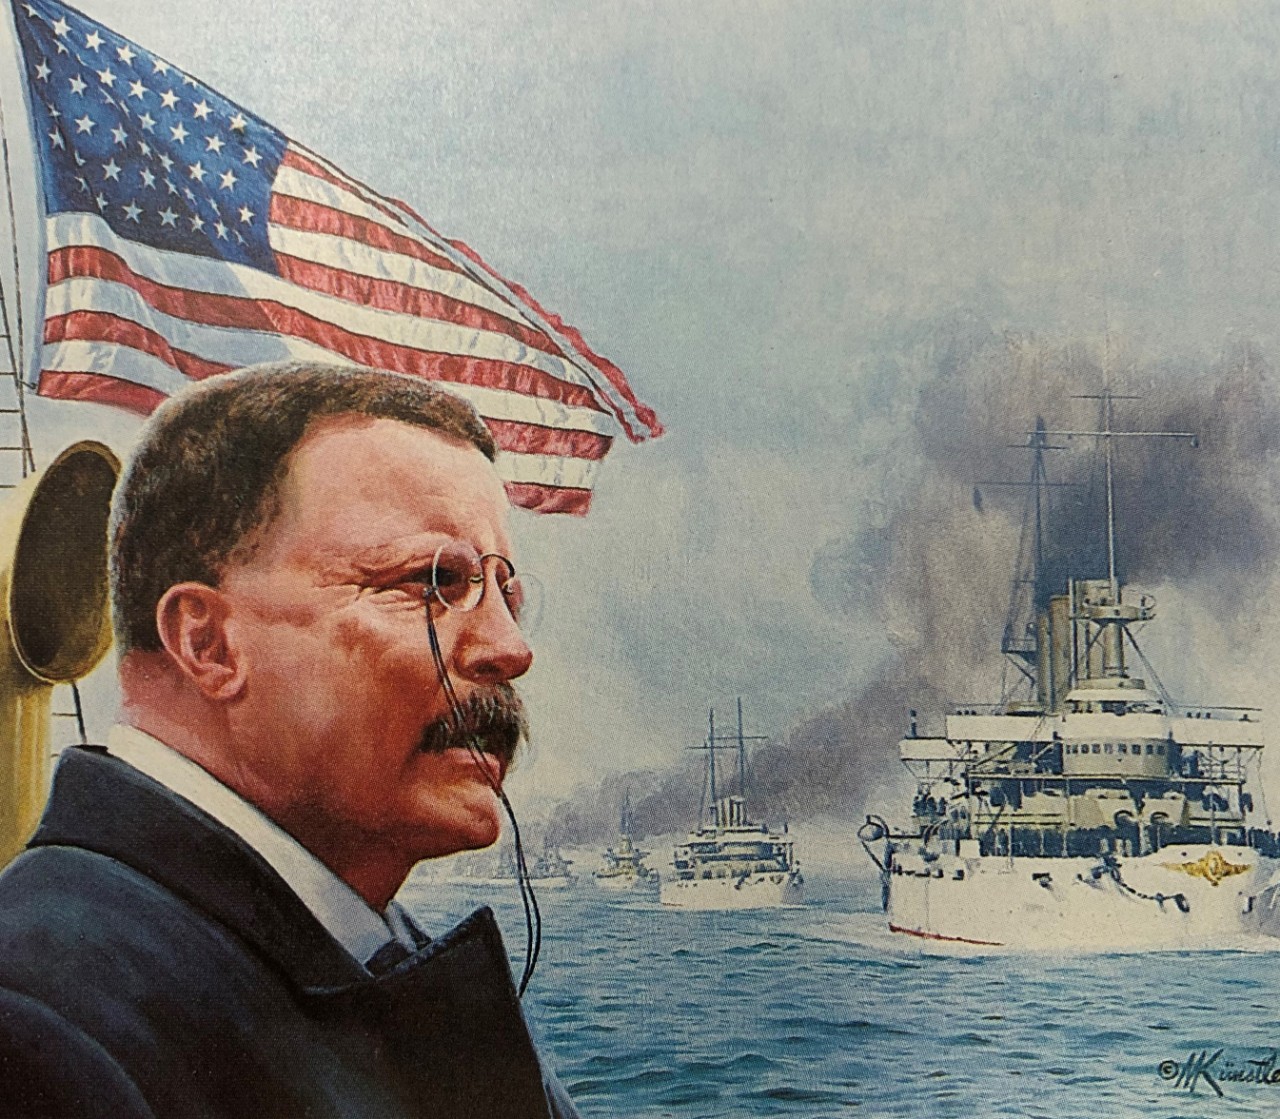 US Navy Great White Fleet Theodore Roosevelt Framed Print by Mort Kunstler 